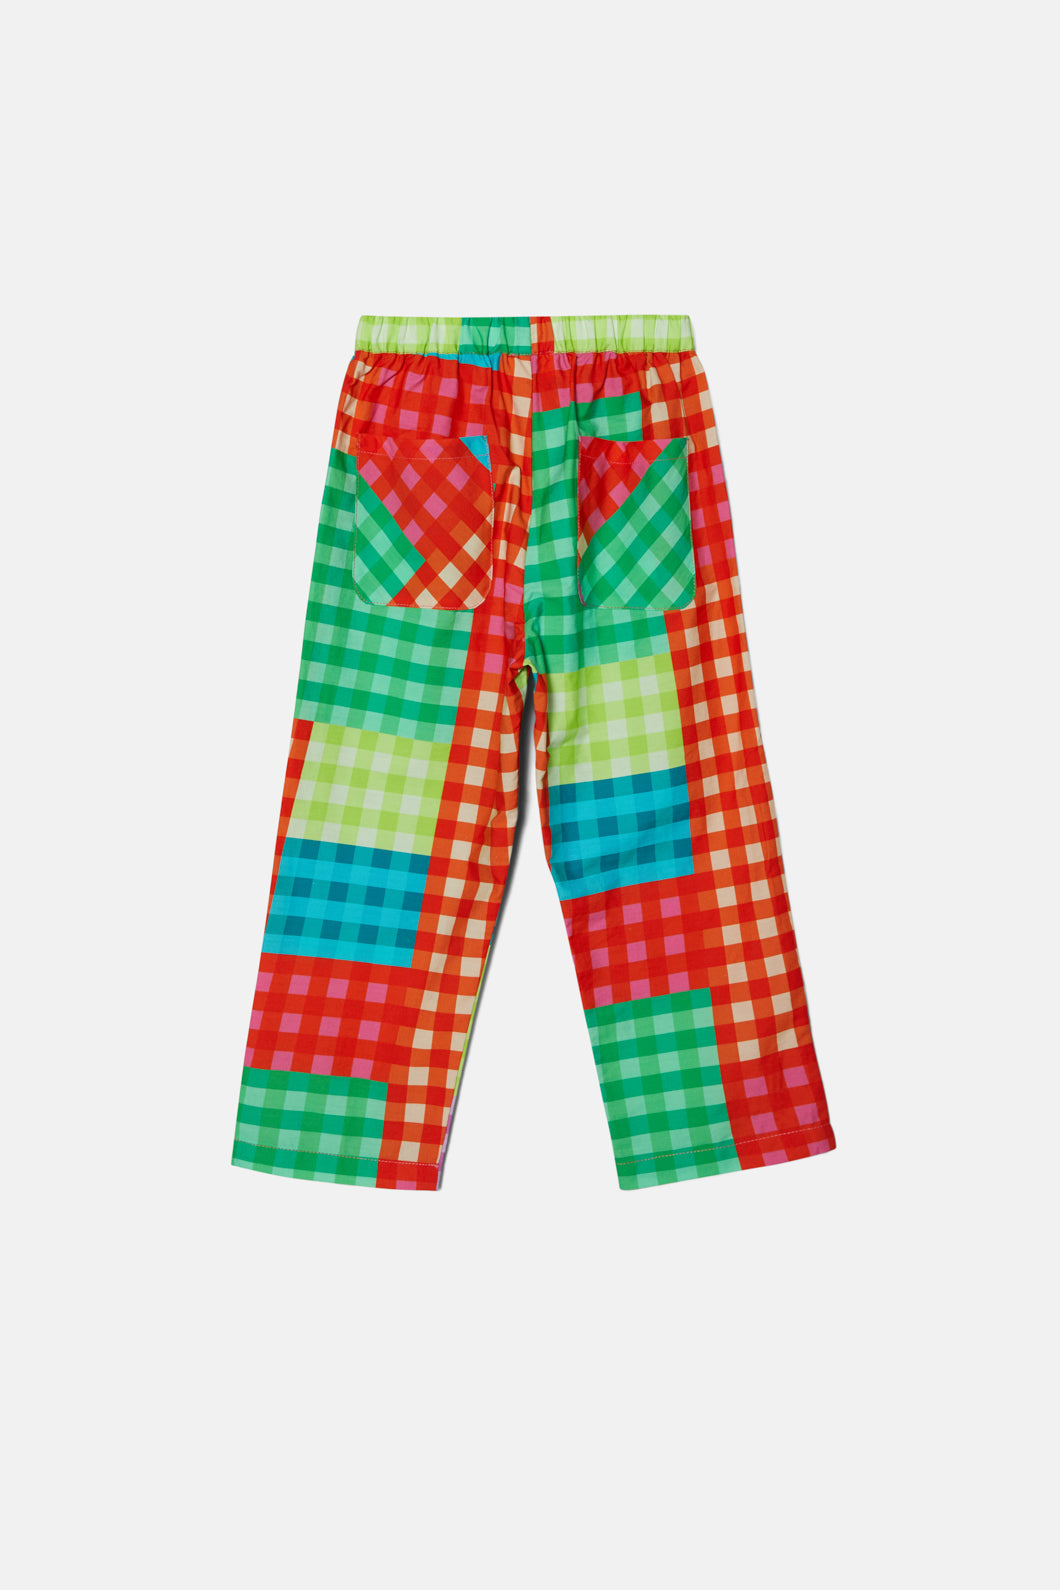 Crazy Colorful Pants